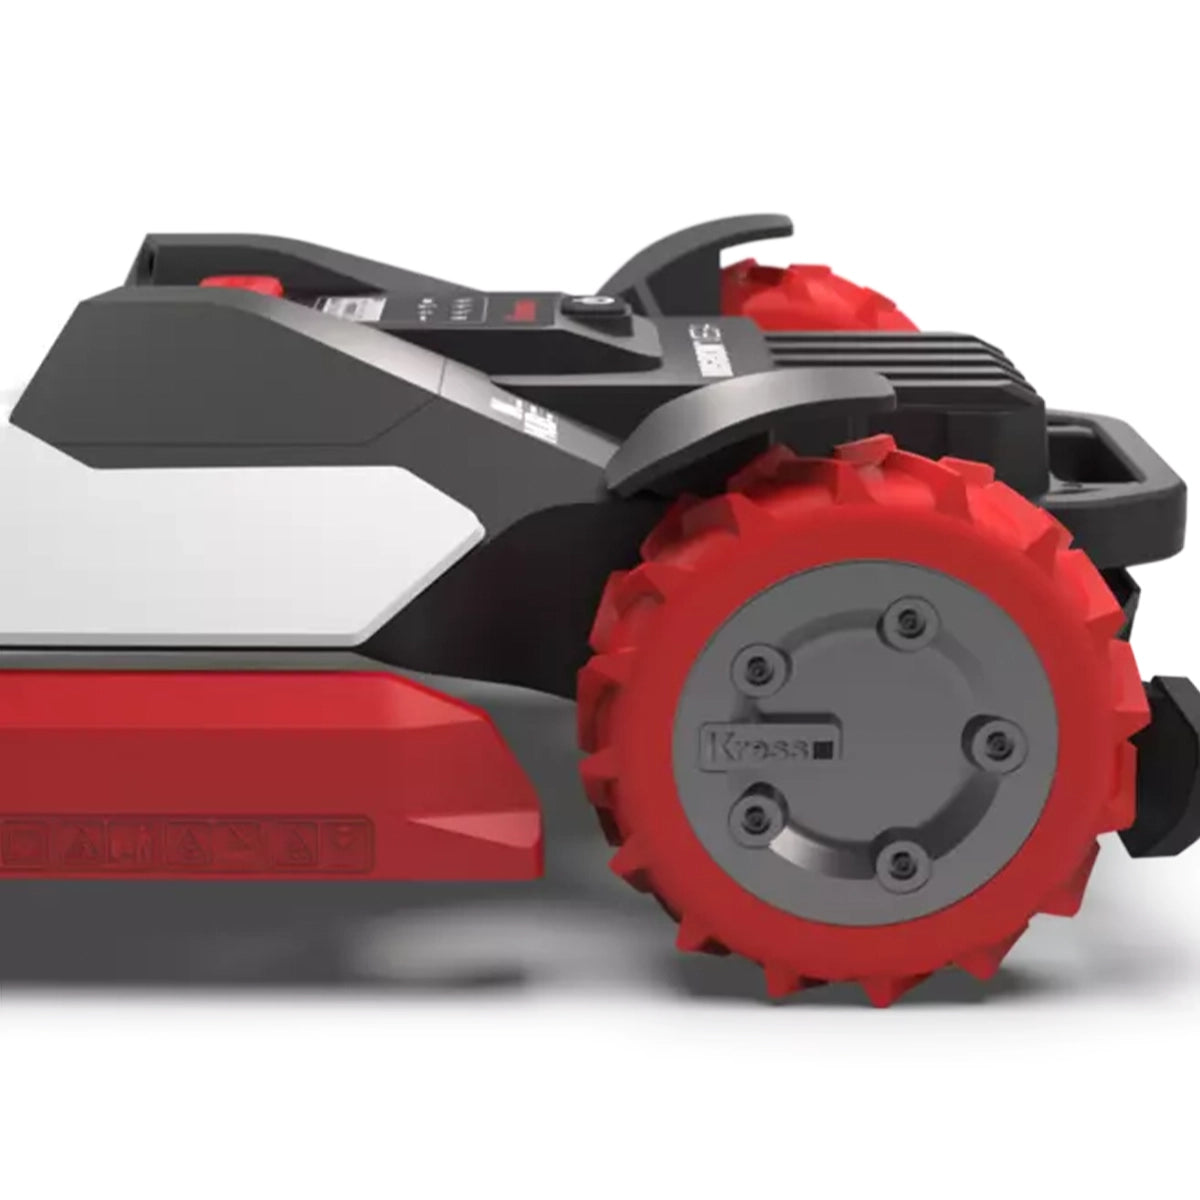 Kress KR136E Mission Mega 6000 Robotic Lawn Mower